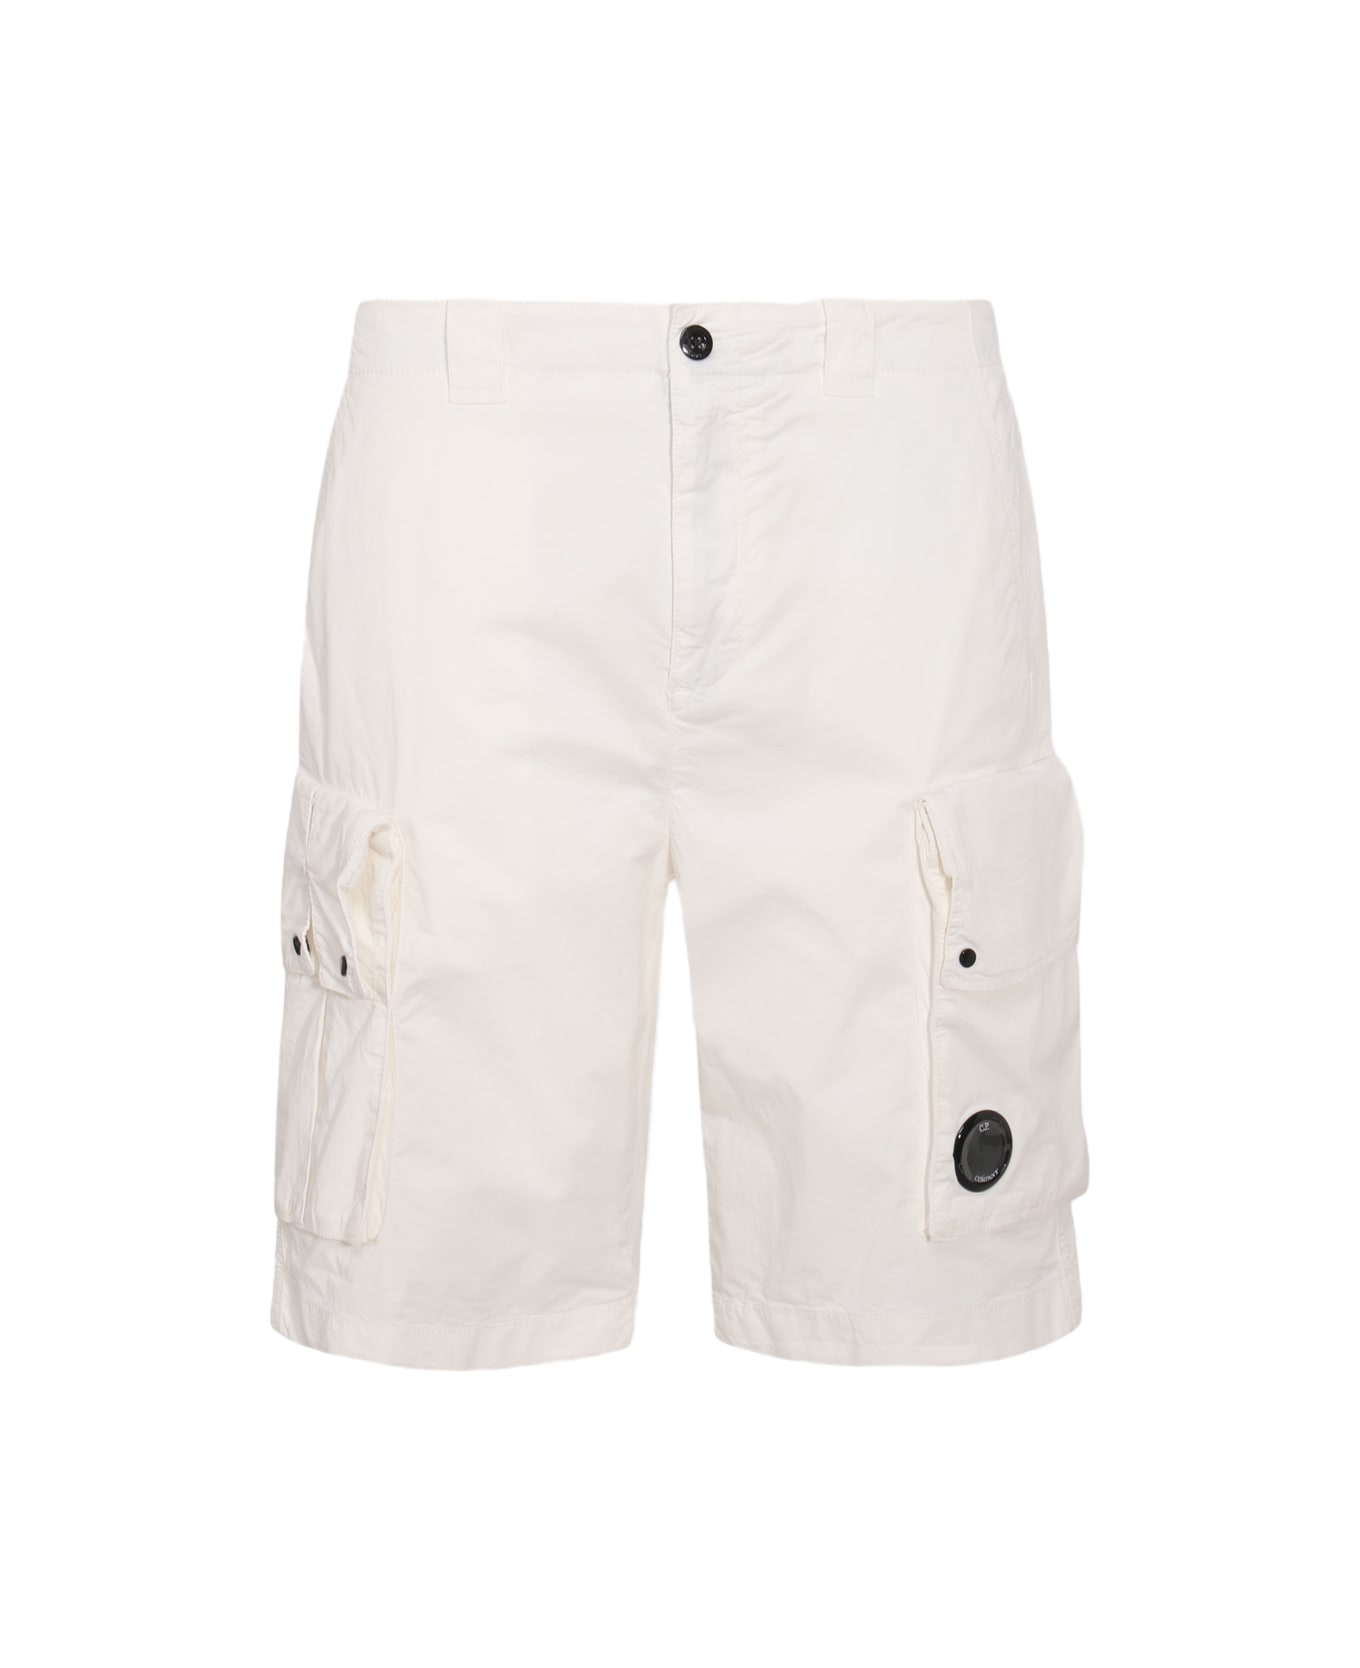 C.P. Company Gauze White Cotton Cargo Shorts - GAUZE WHITE